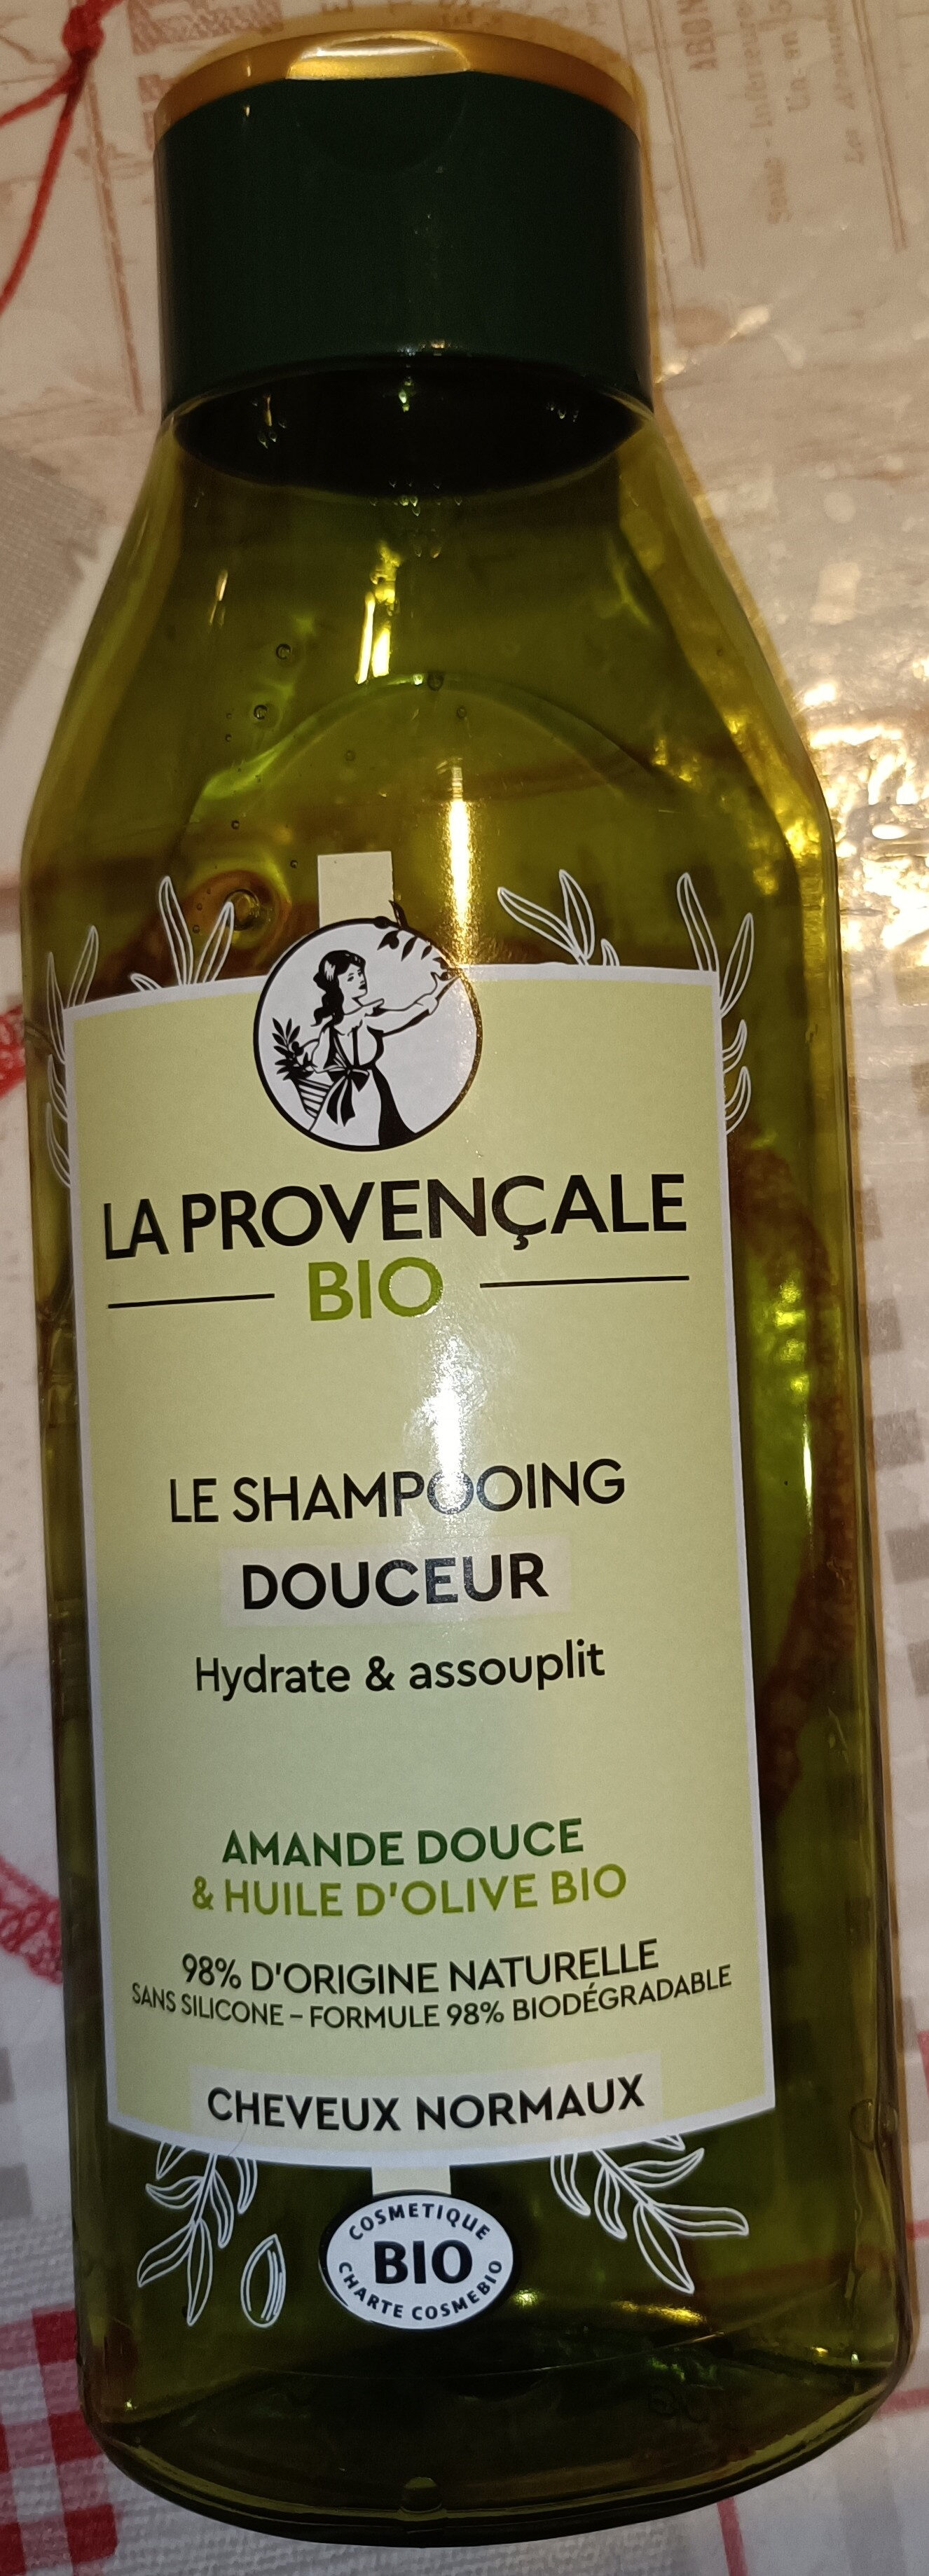 Le shampooing douceur - Продукт - fr